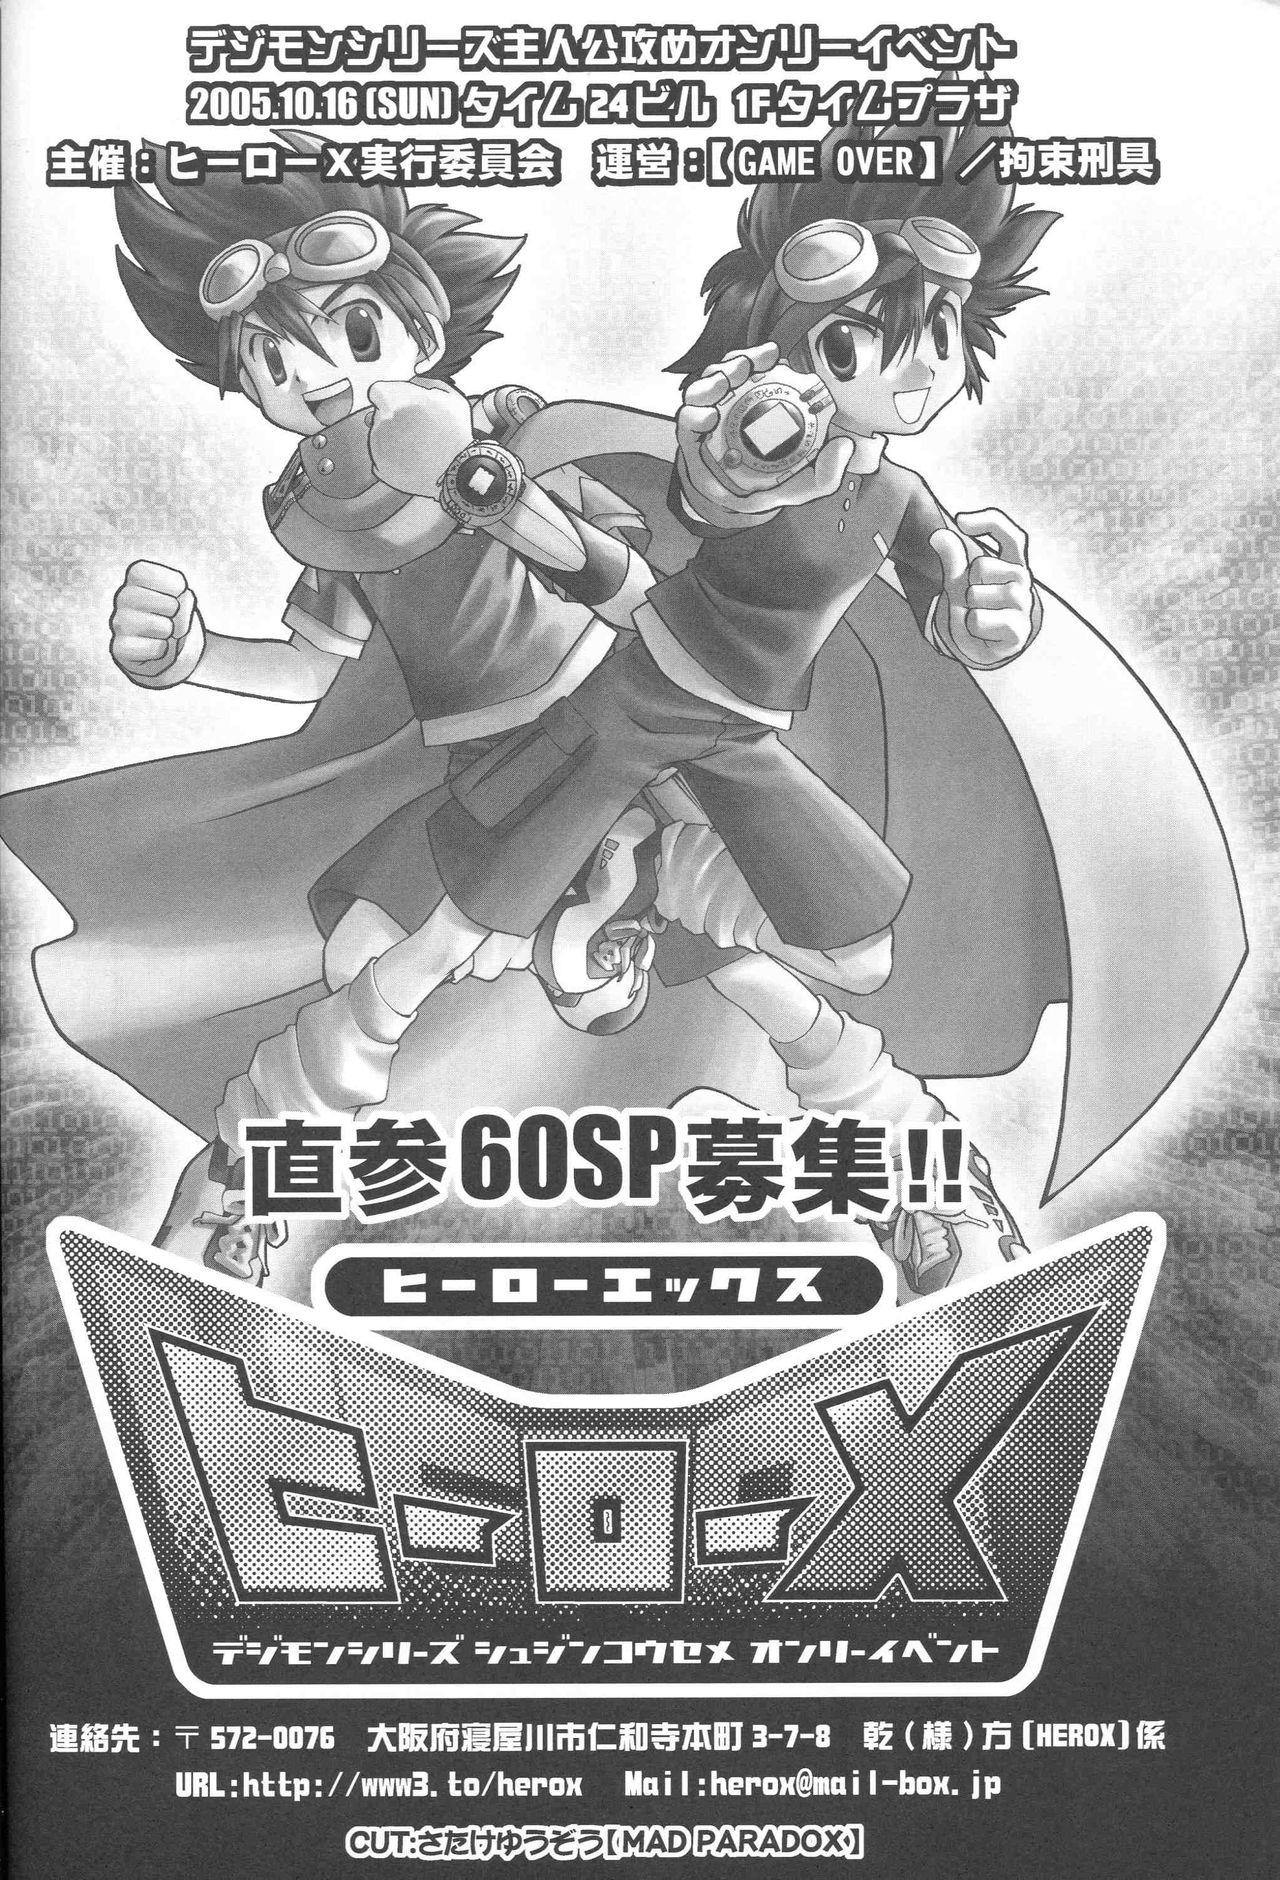 (Shinyuu? "Lovers" Punch ~TaiYama Kanshasai~) [GAME OVER (Kizuki Kei, Kidsuki Kuko)] Kizuna no Kakera. 1999-nen 9-gatsu (Digimon Adventure) 26